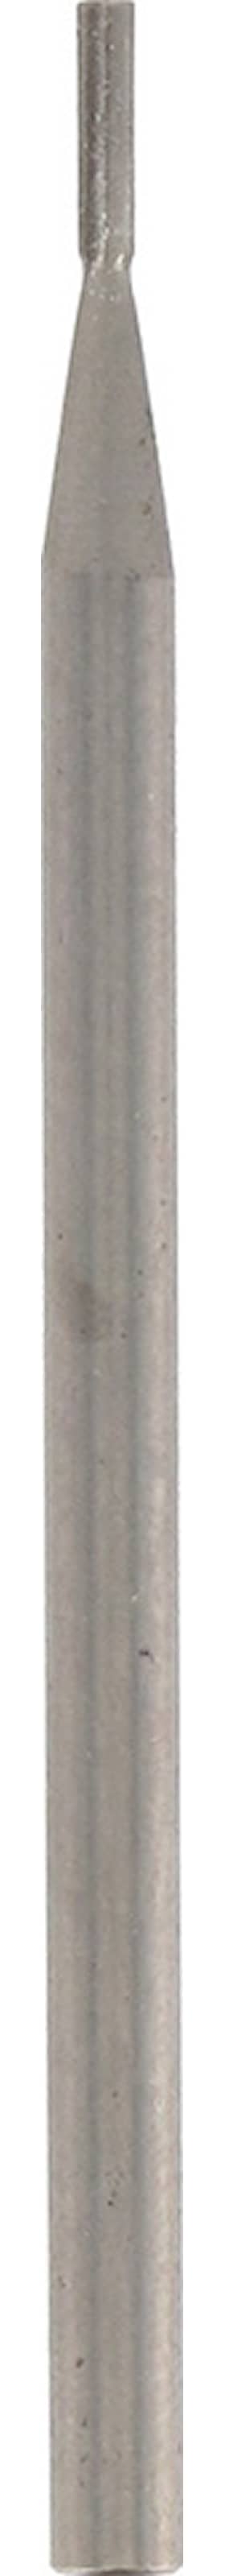 Dremel graveringsfres 111JA 0,8 mm 3 stk